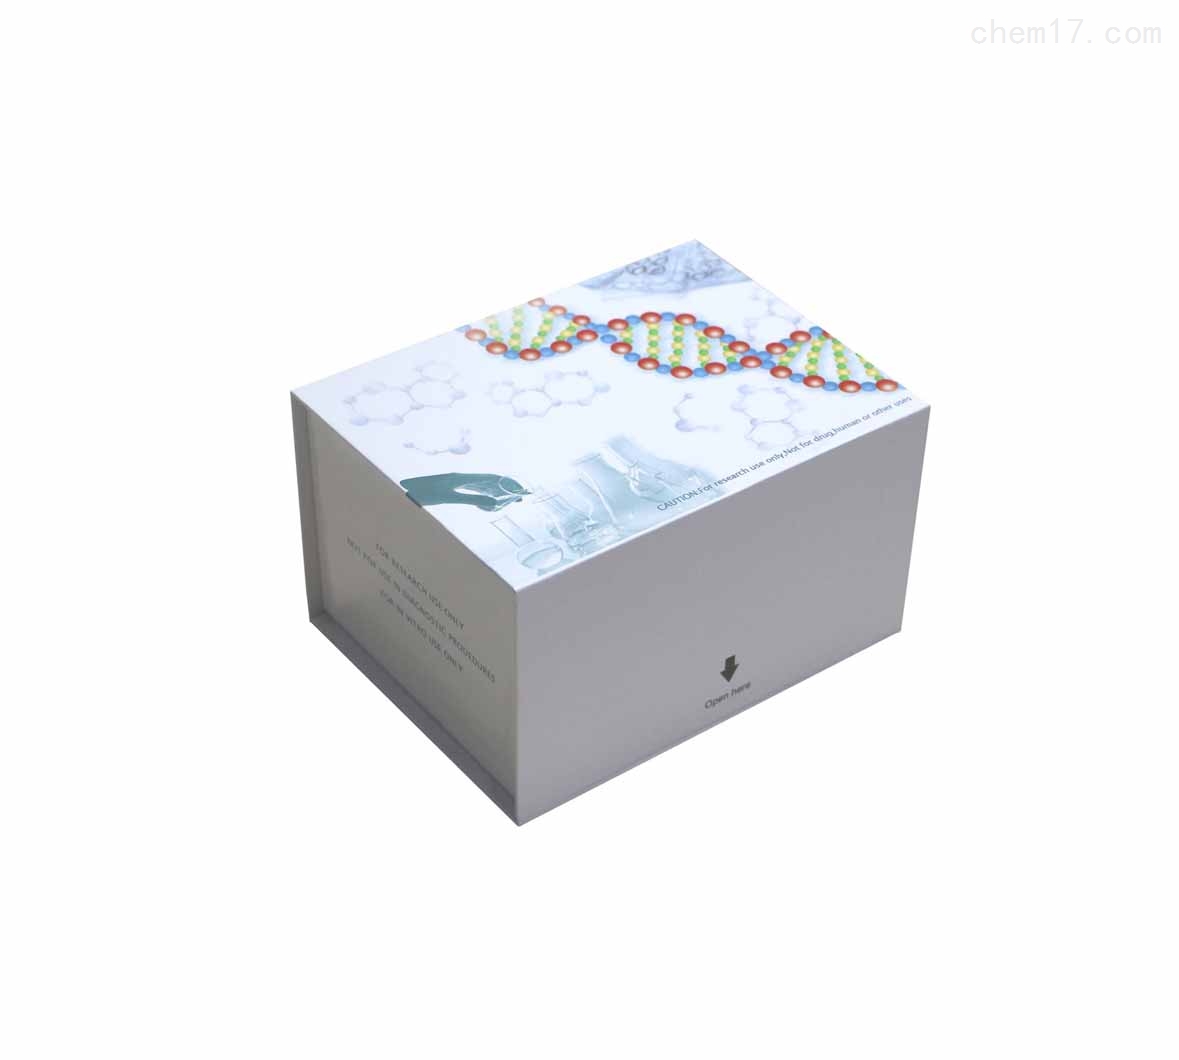 大鼠雄激素(androgen)ELISA试剂盒买家推荐